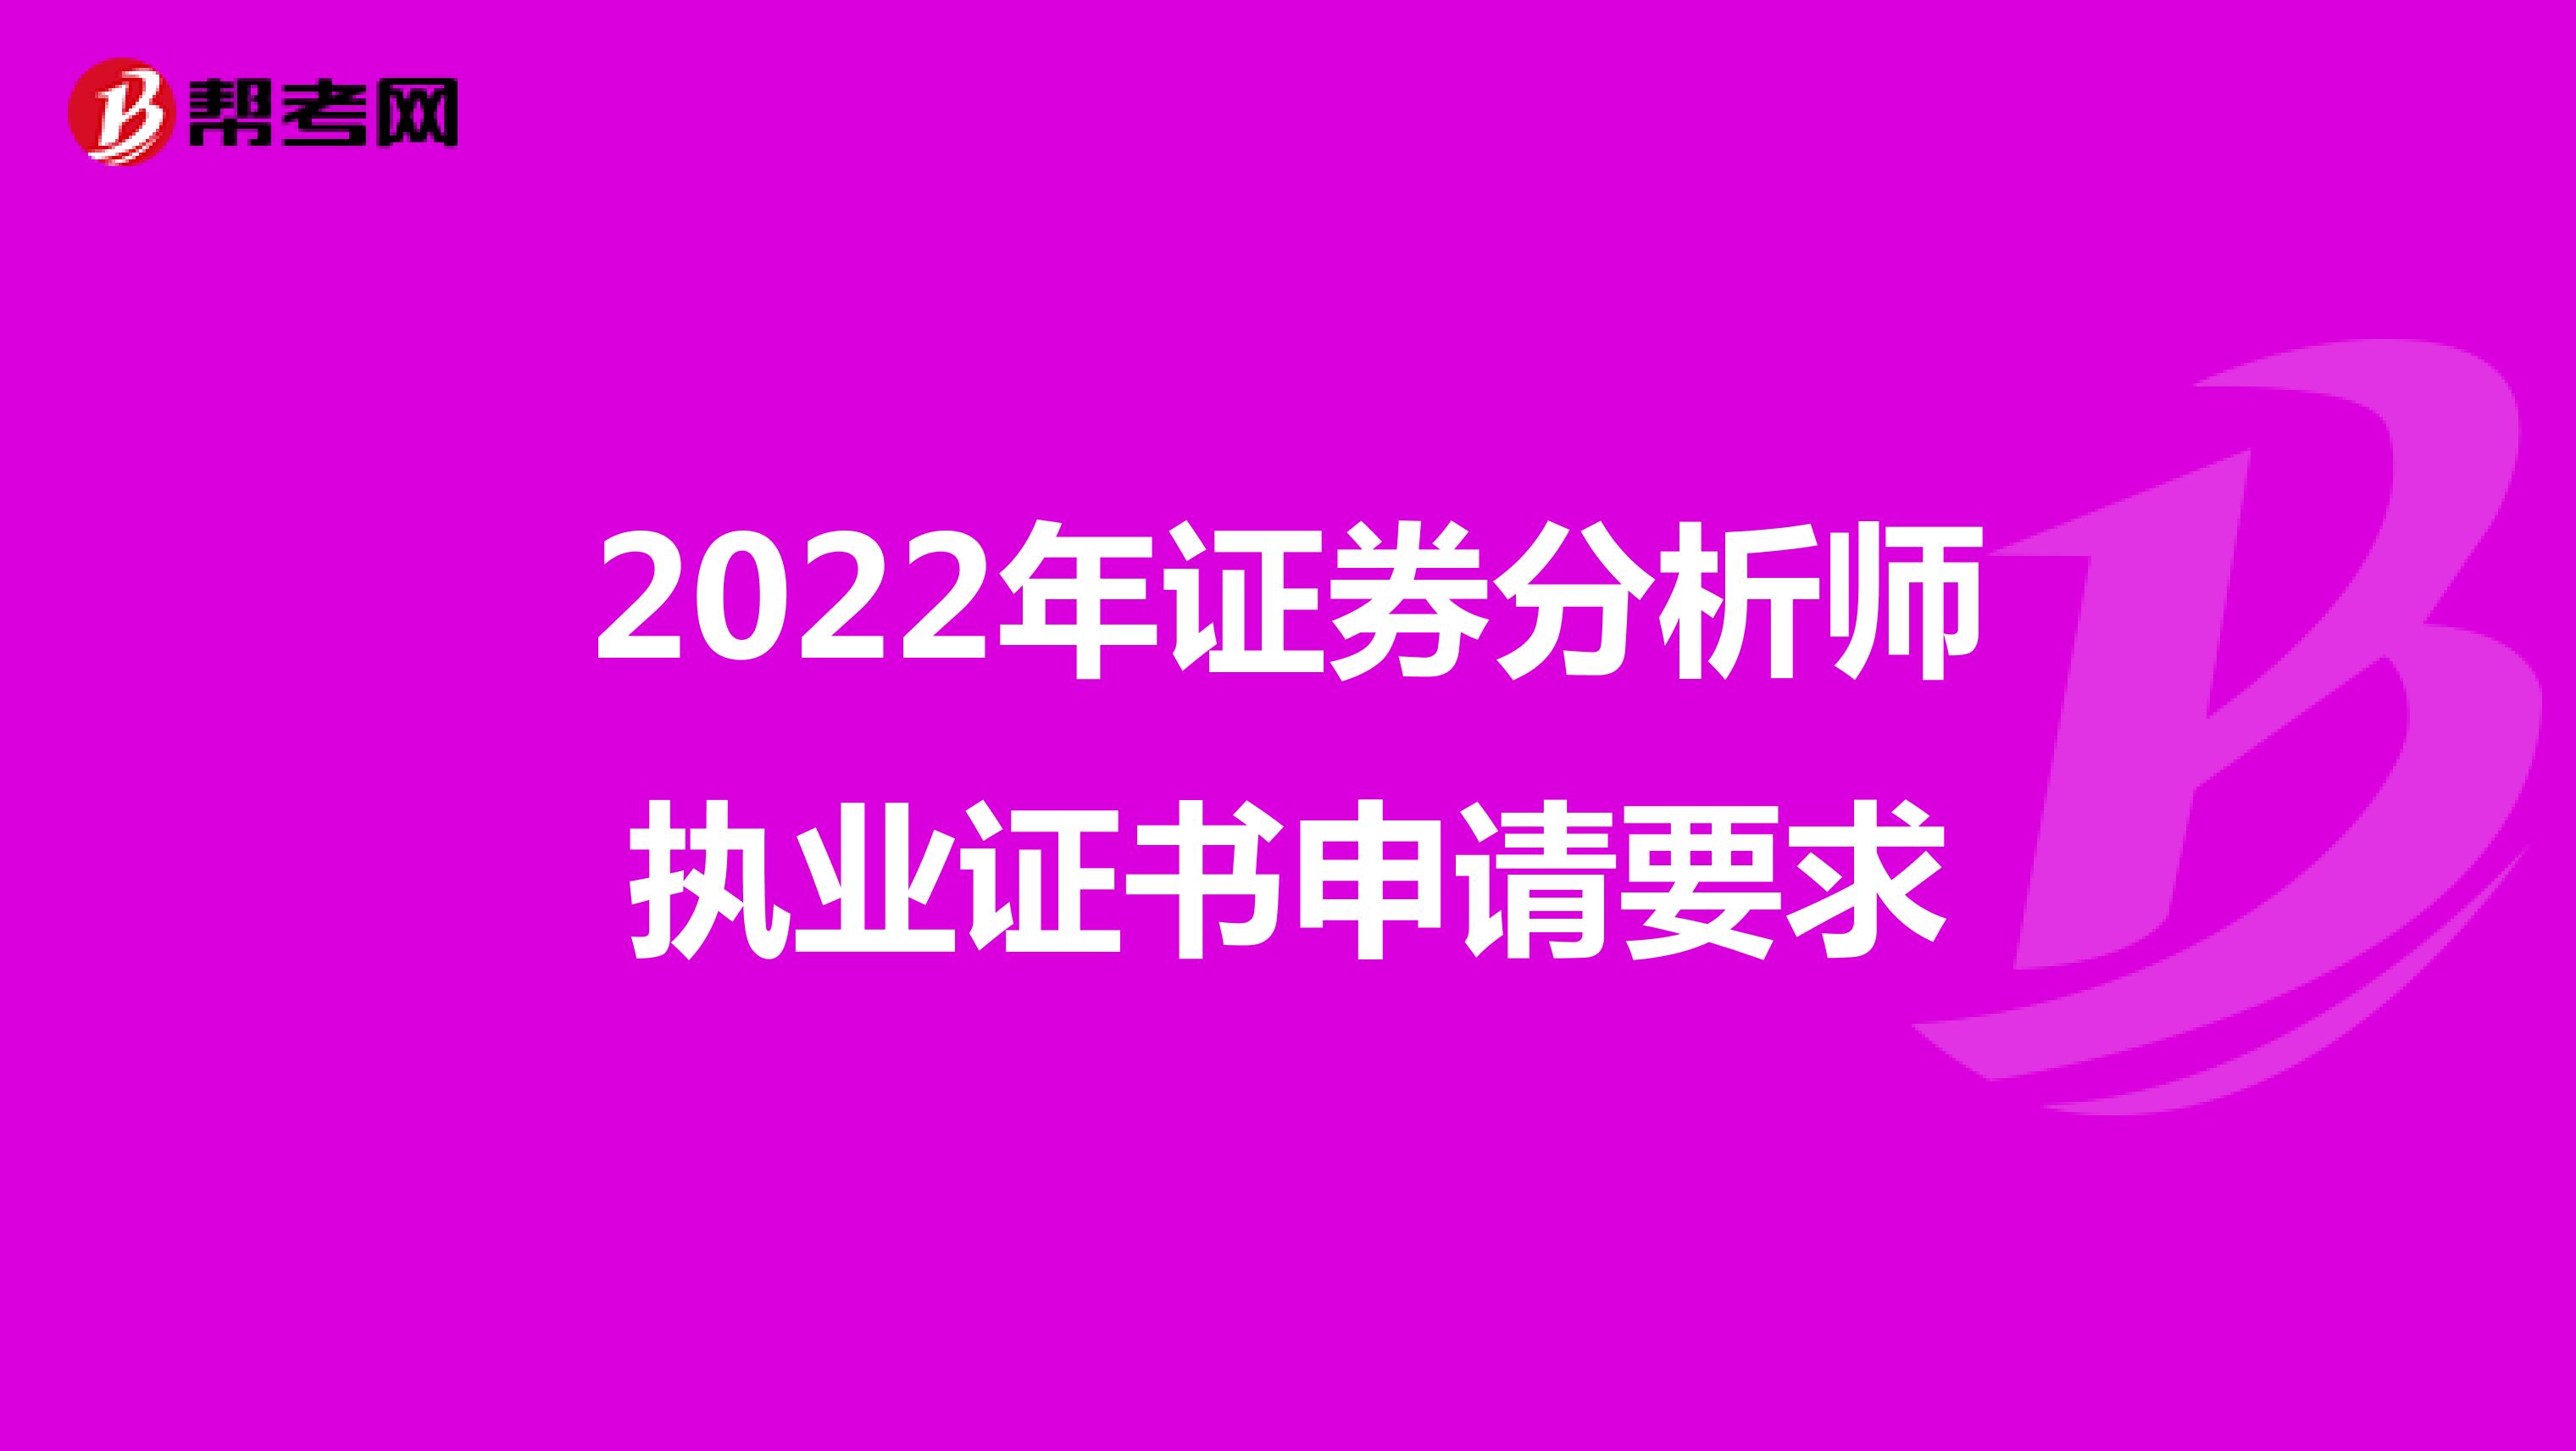 2022年证券分析师执业证书申请要求